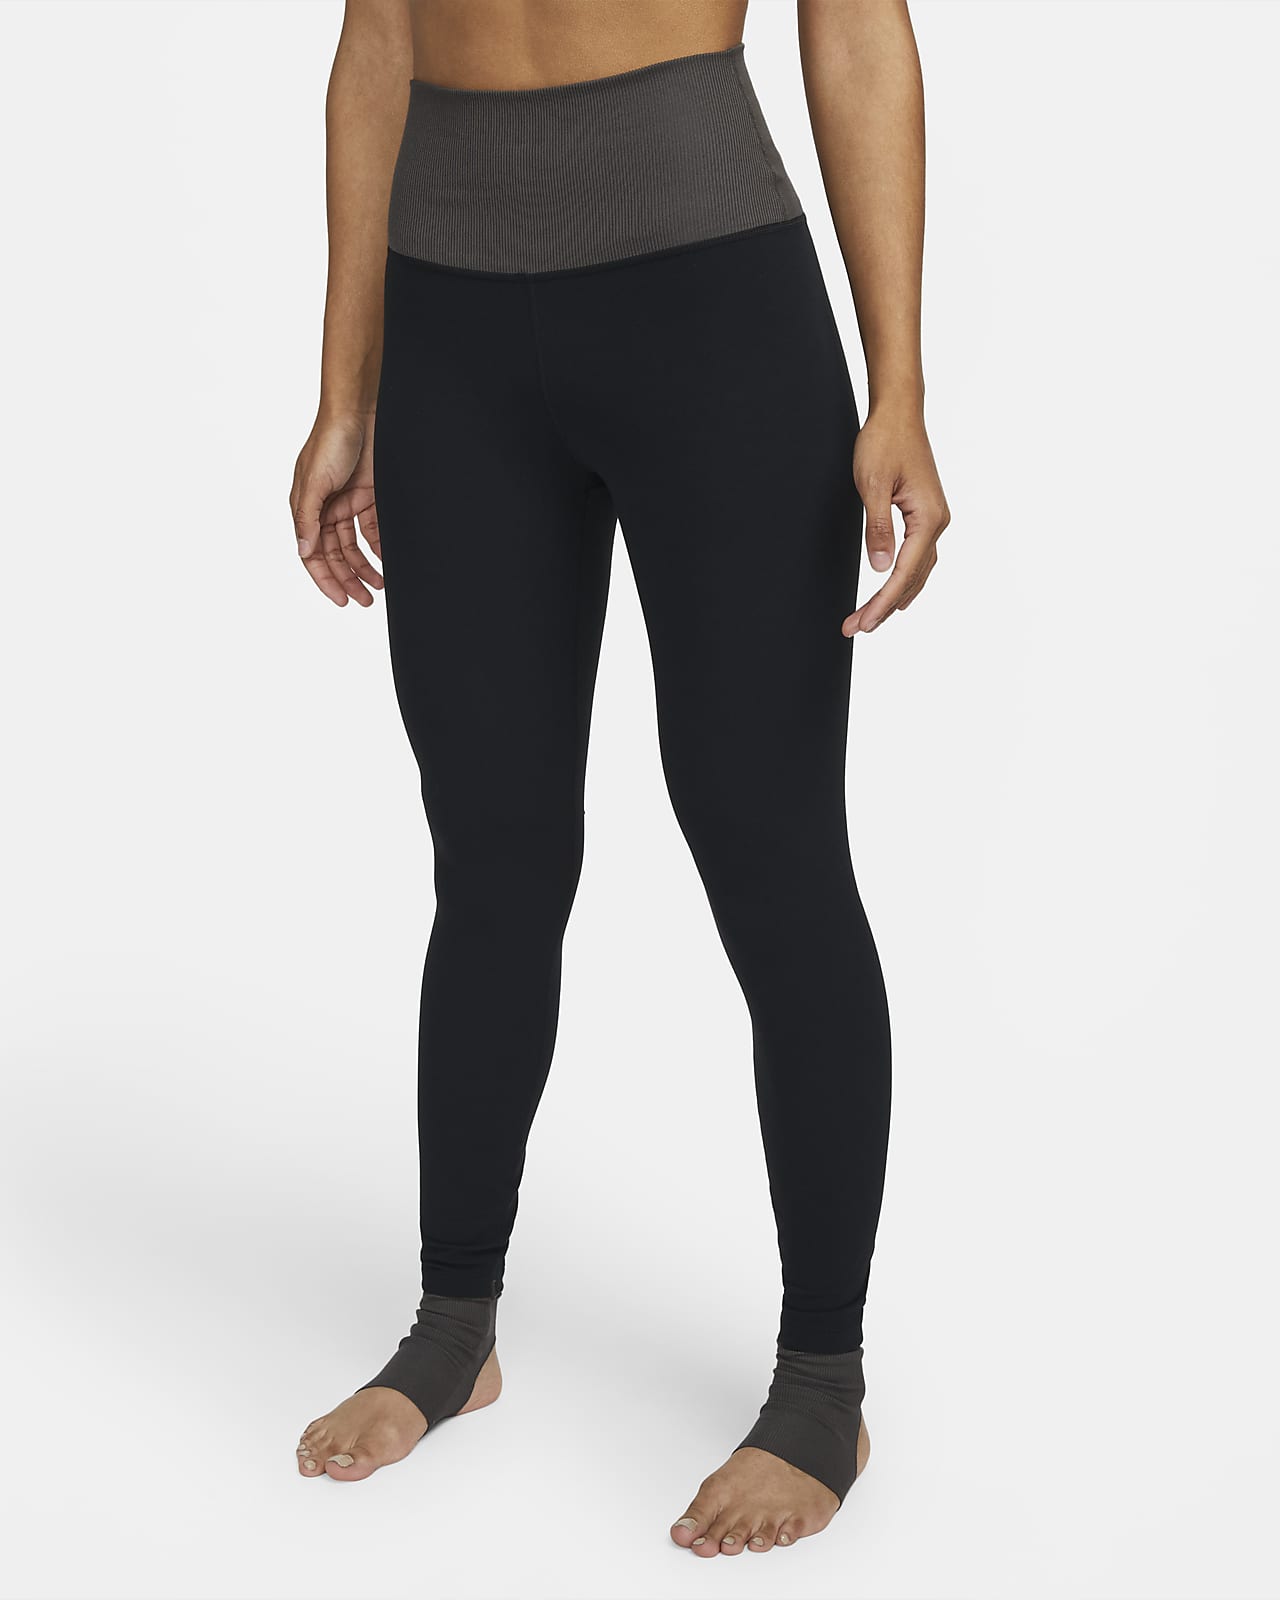 Leggings a 7/8 e vita alta in blocchi di colore Nike Yoga Dri-FIT Luxe - Donna